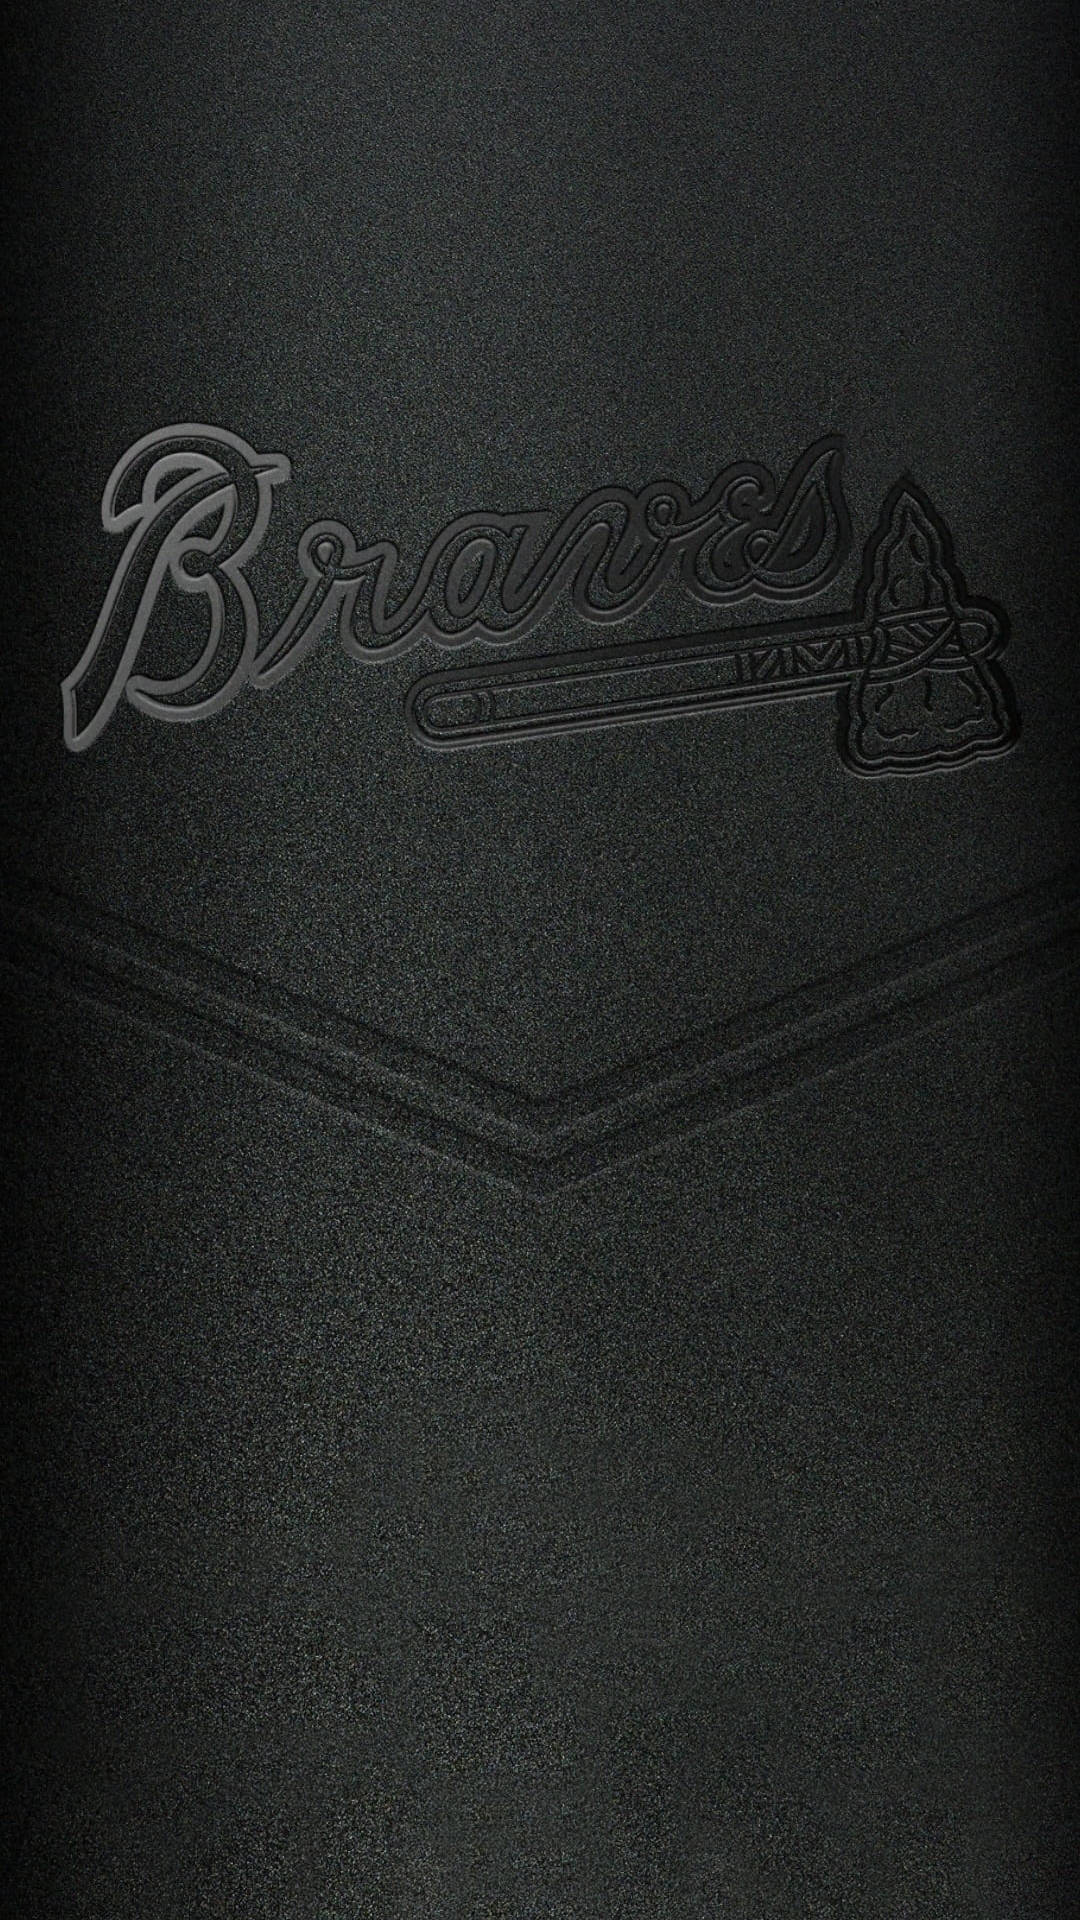 Grabadode Los Bravos De Atlanta En Iphone De Béisbol. Fondo de pantalla